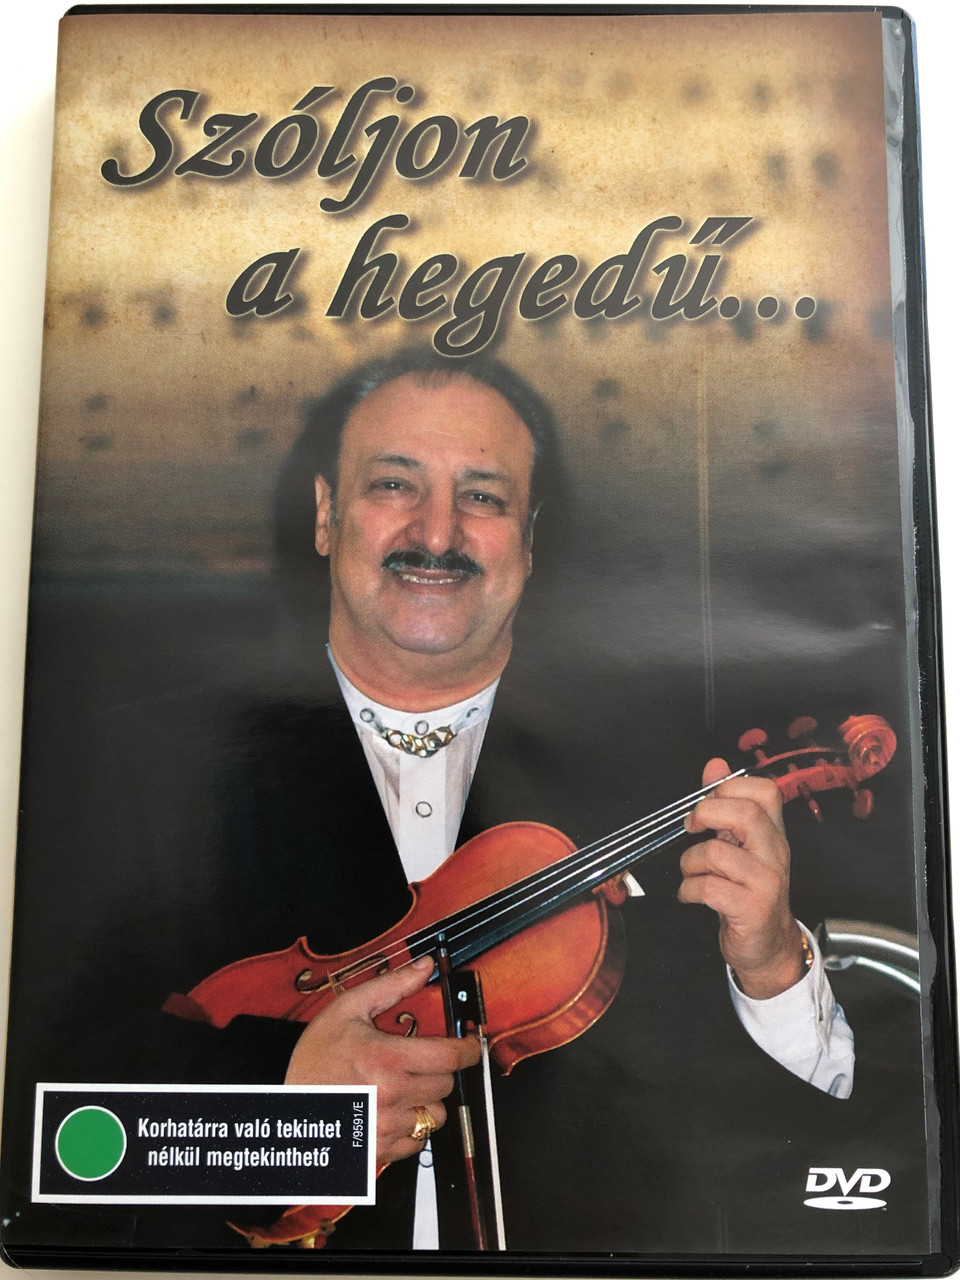 Szóljon a hegedű... DVD Ifj. Sánta Ferenc / Hungarian Gypsy Orchestra /  Conducted by Szenthelyi Miklós / Mókép - Mtv / Compilated by Nemlaha György  - bibleinmylanguage